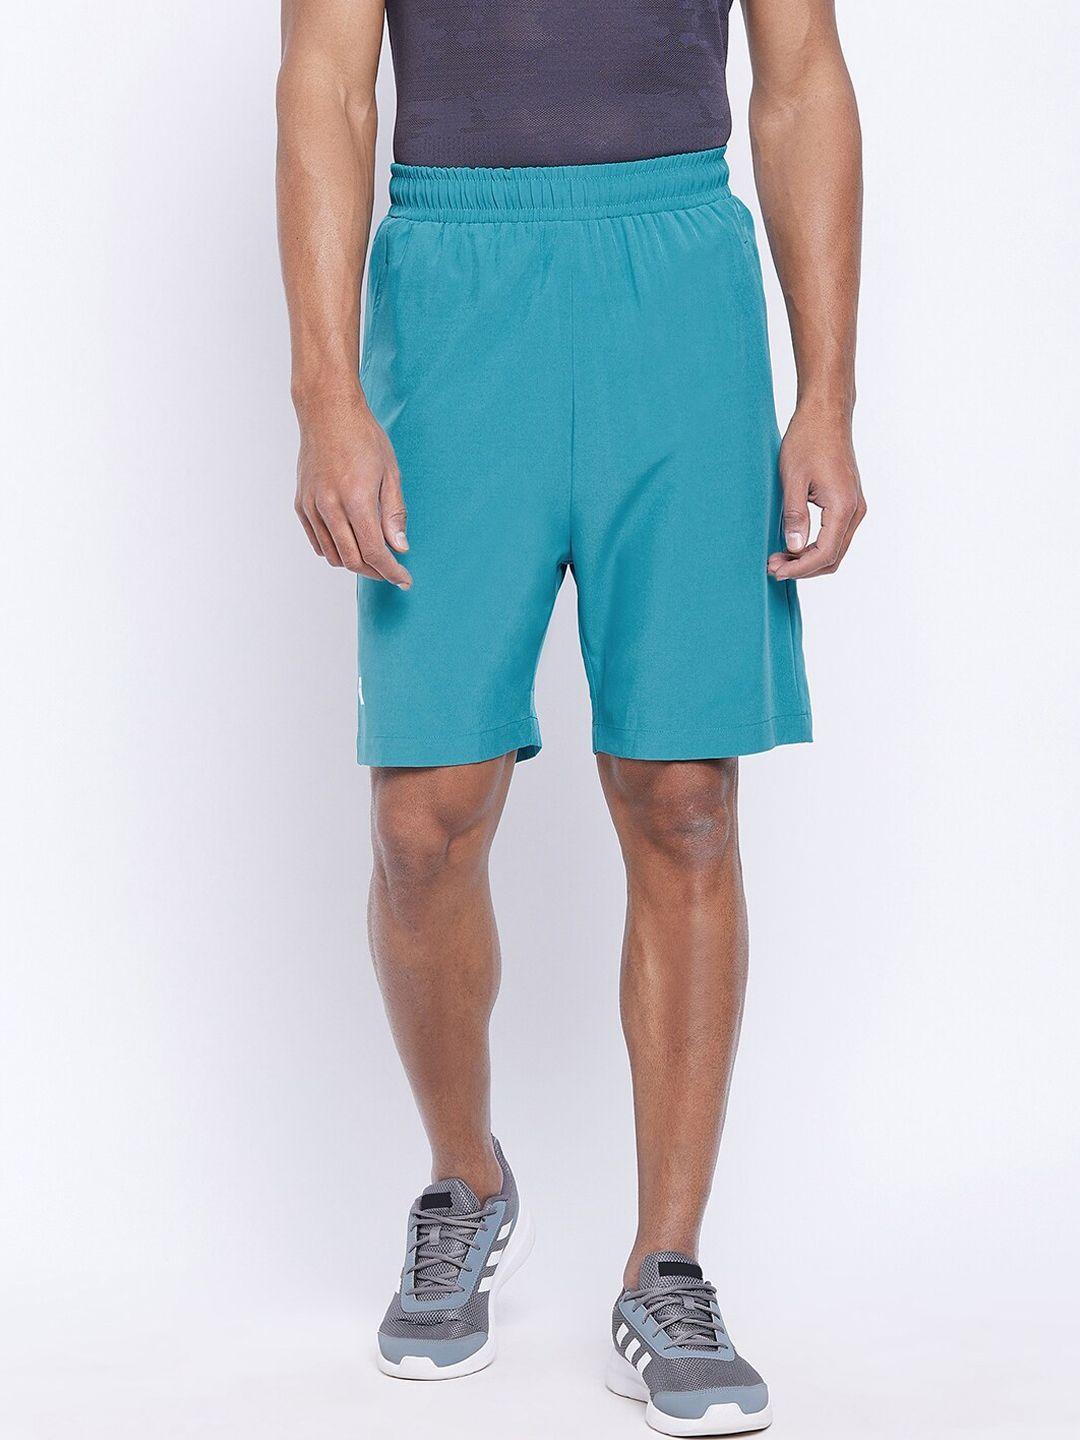 unpar men turquoise blue outdoor sports shorts